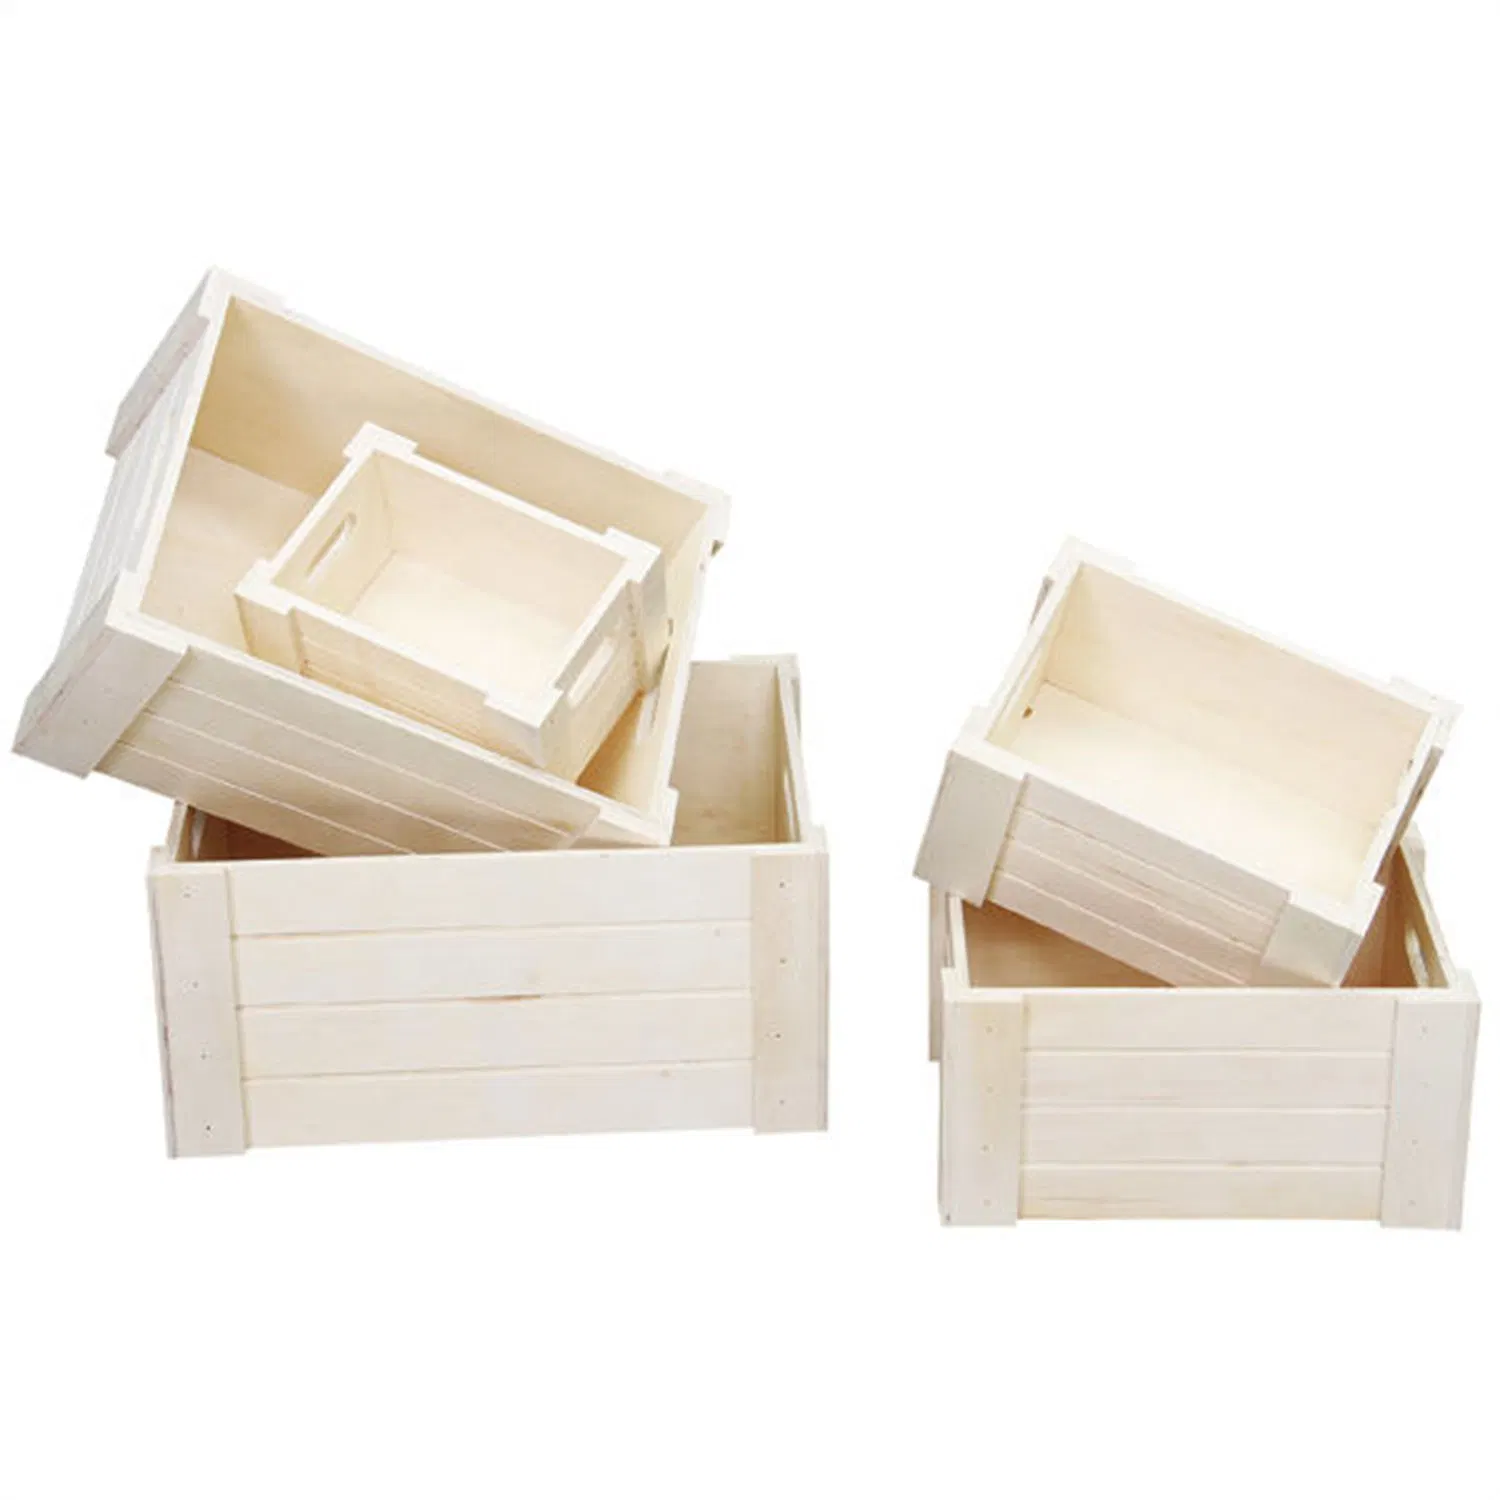 Caixa de madeira sem pintura artesanal com tampa articulada para Artesanato DIY armazenamento Jóias Plain Pine Box